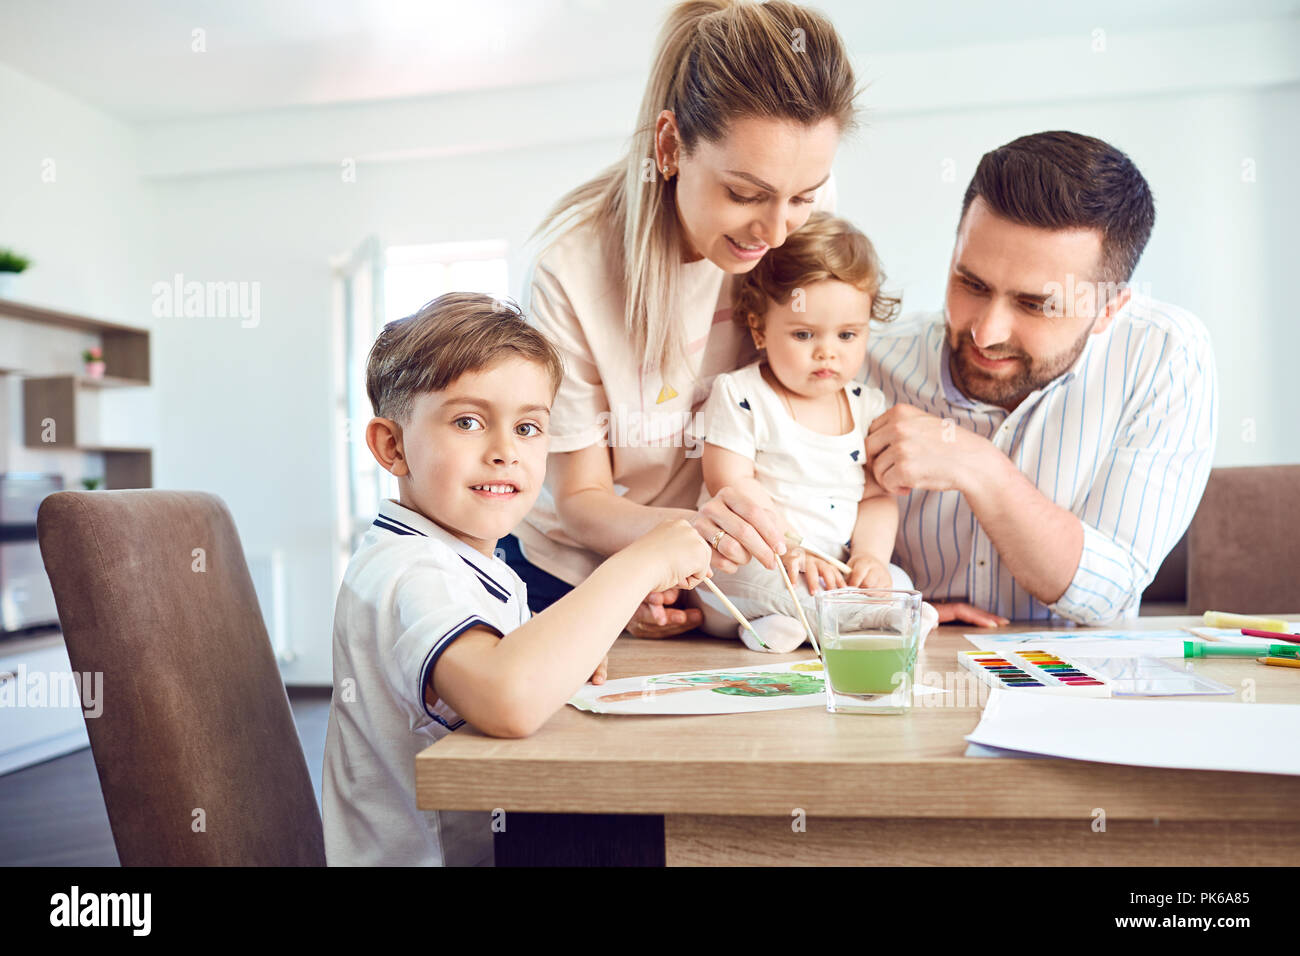 Glückliche Familie zieht malt auf ein Papier auf den Tisch. Stockfoto